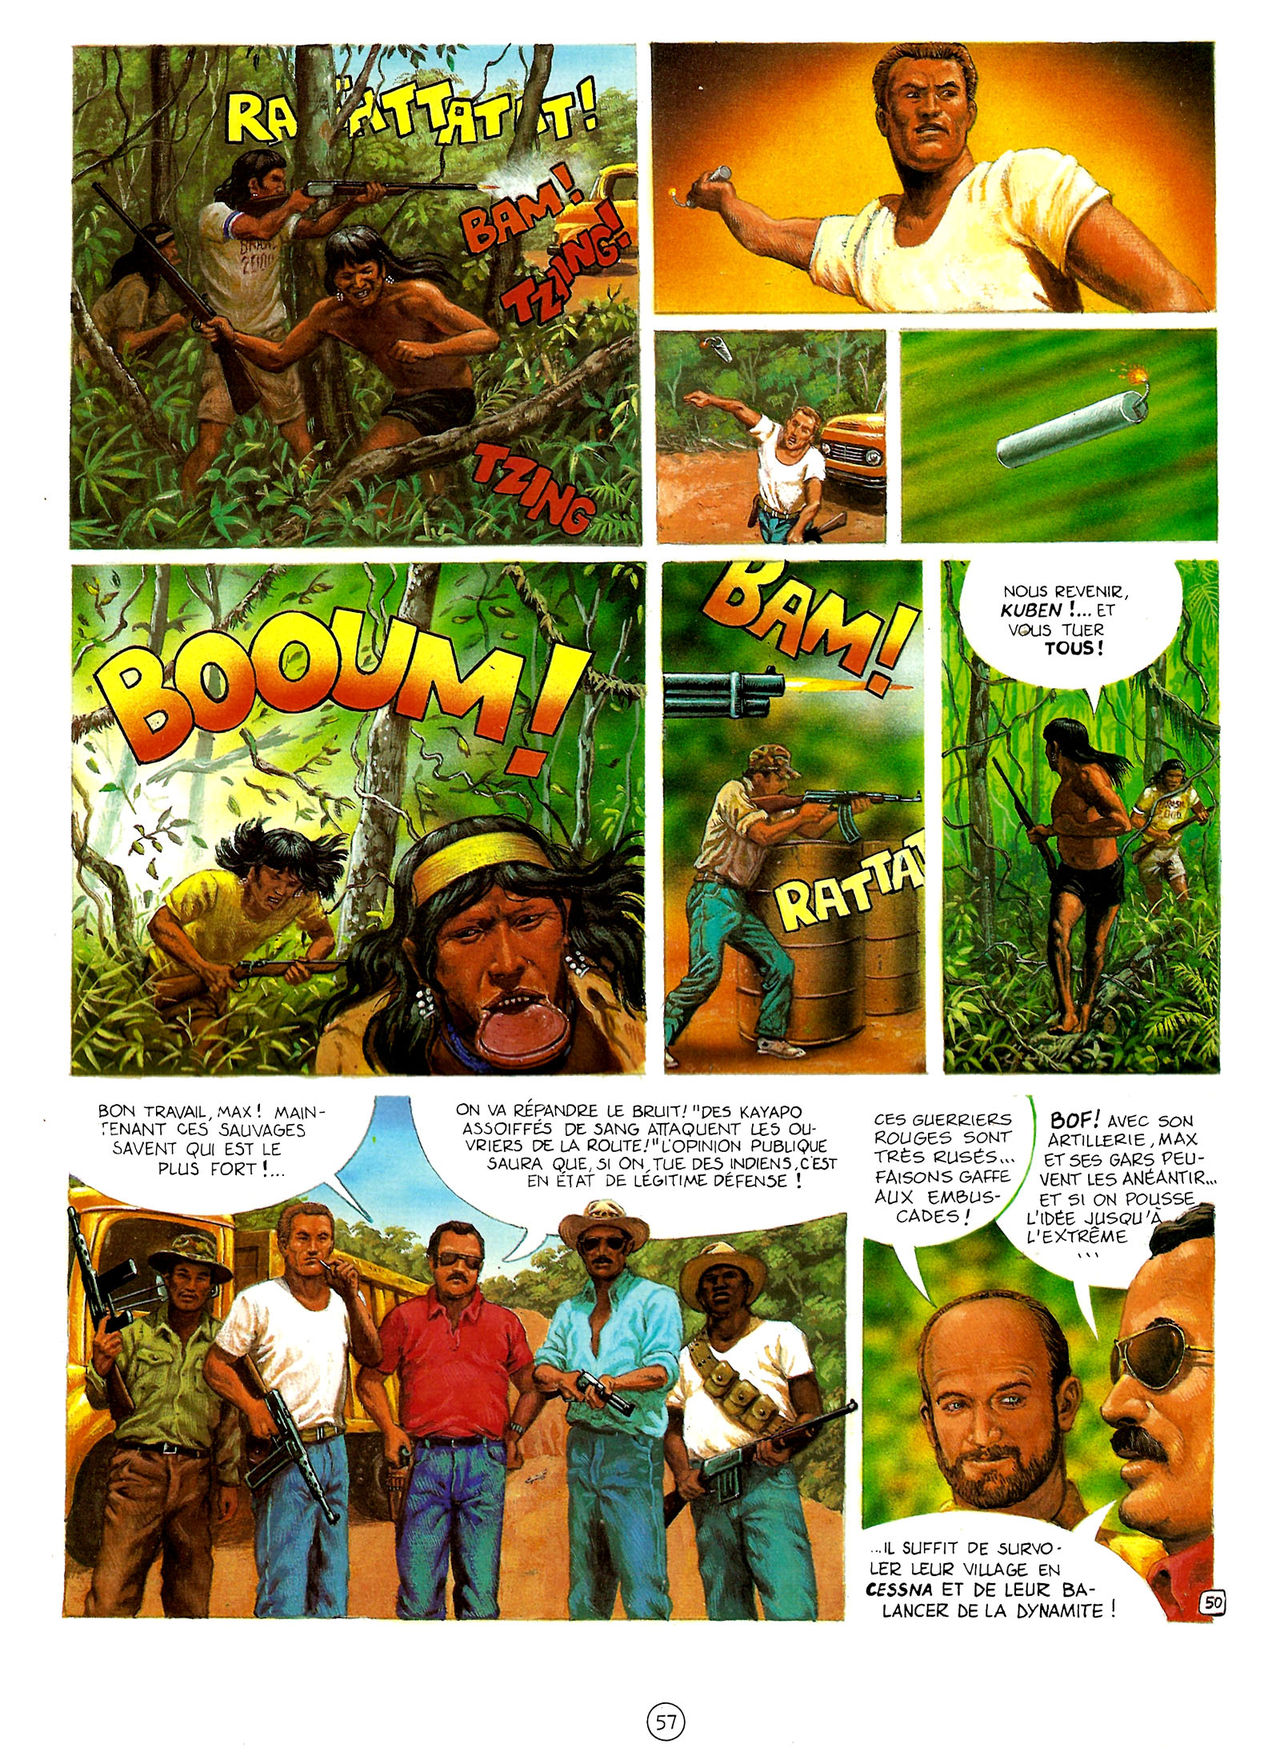 Les Aventures de Vic Voyage 05 - Brazil! numero d'image 57